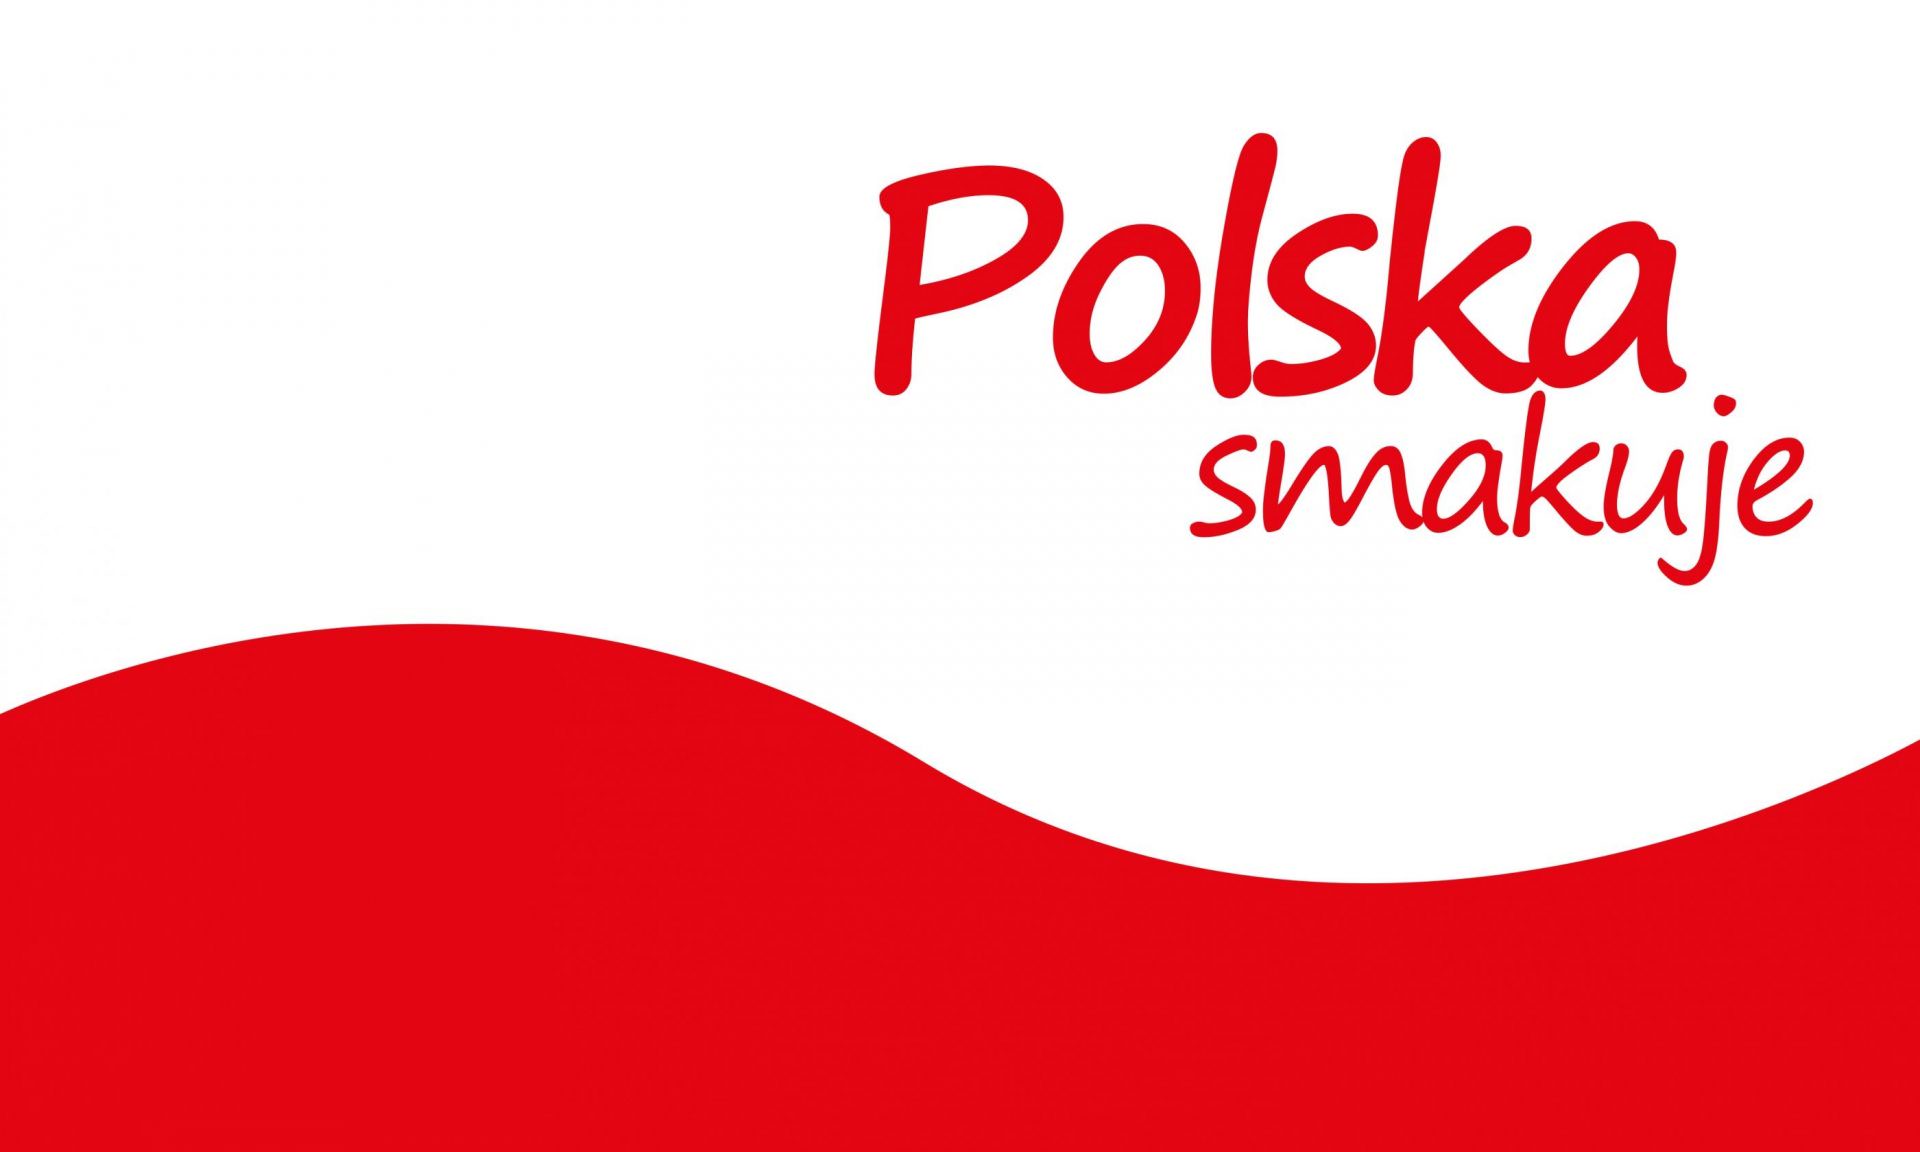 Polska smakuje